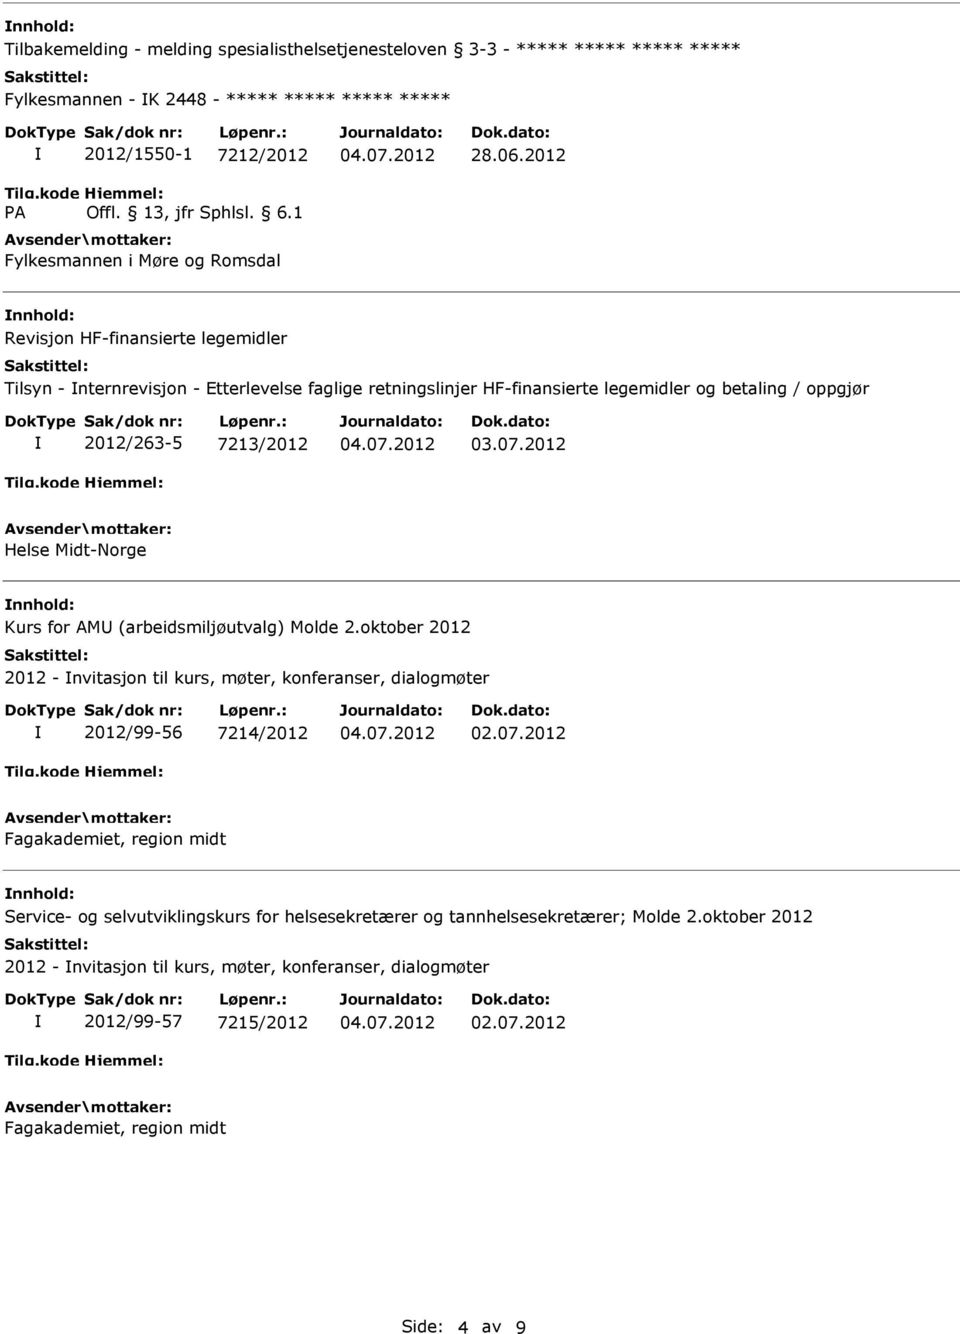 2012 nnhold: Revisjon HF-finansierte legemidler Tilsyn - nternrevisjon - Etterlevelse faglige retningslinjer HF-finansierte legemidler og betaling / oppgjør 2012/263-5 7213/2012 nnhold: Kurs